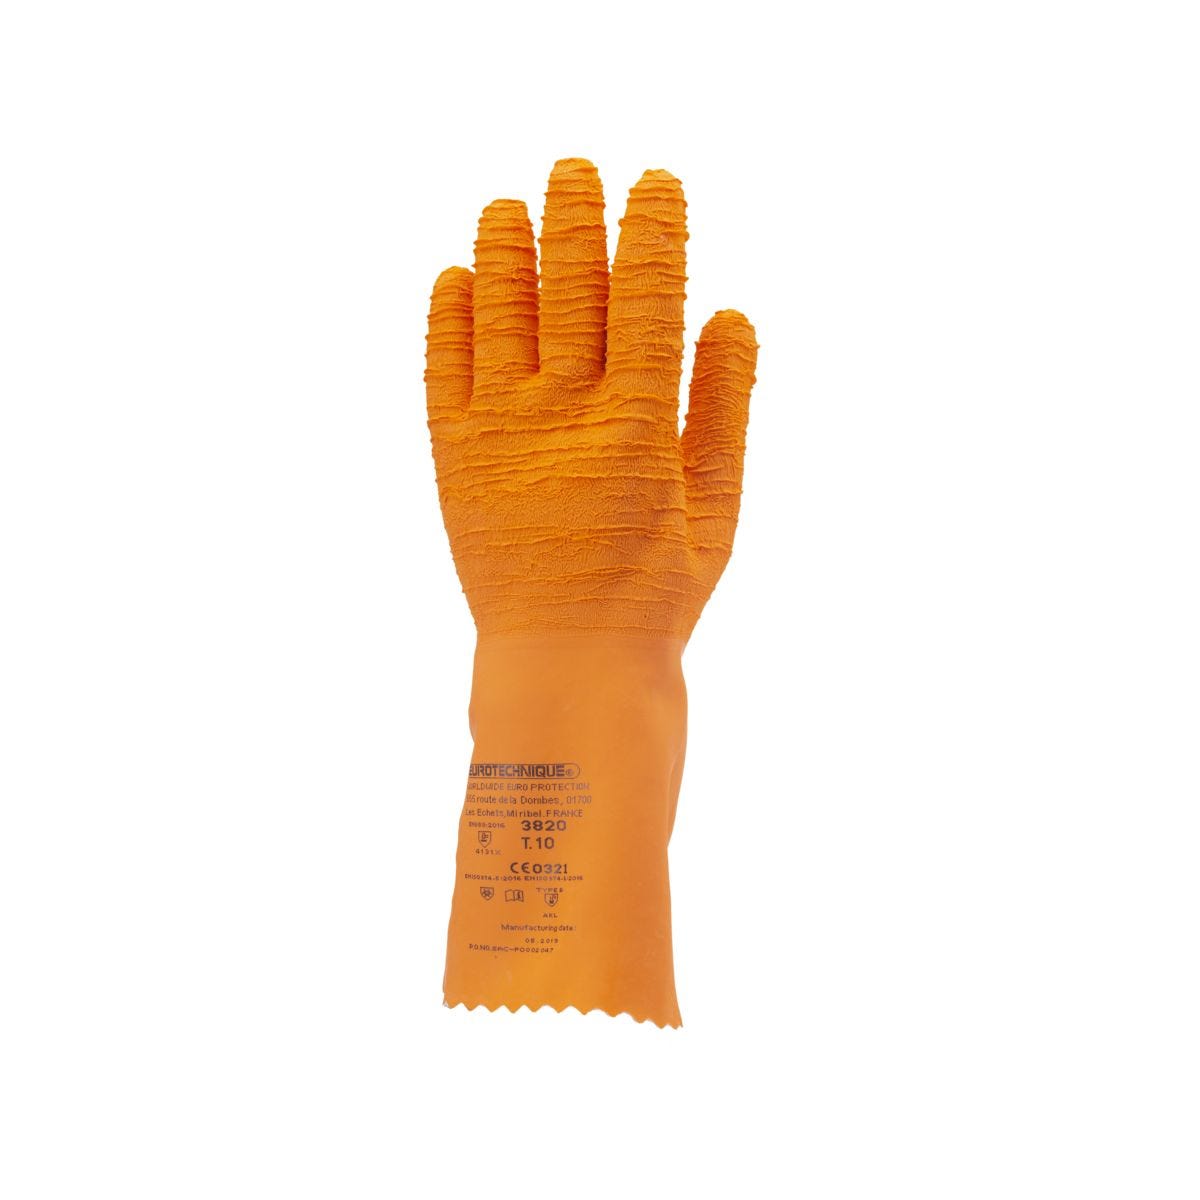 Gants latex crépé orange 34 cm qualité sup. - COVERGUARD - Taille M-8 0